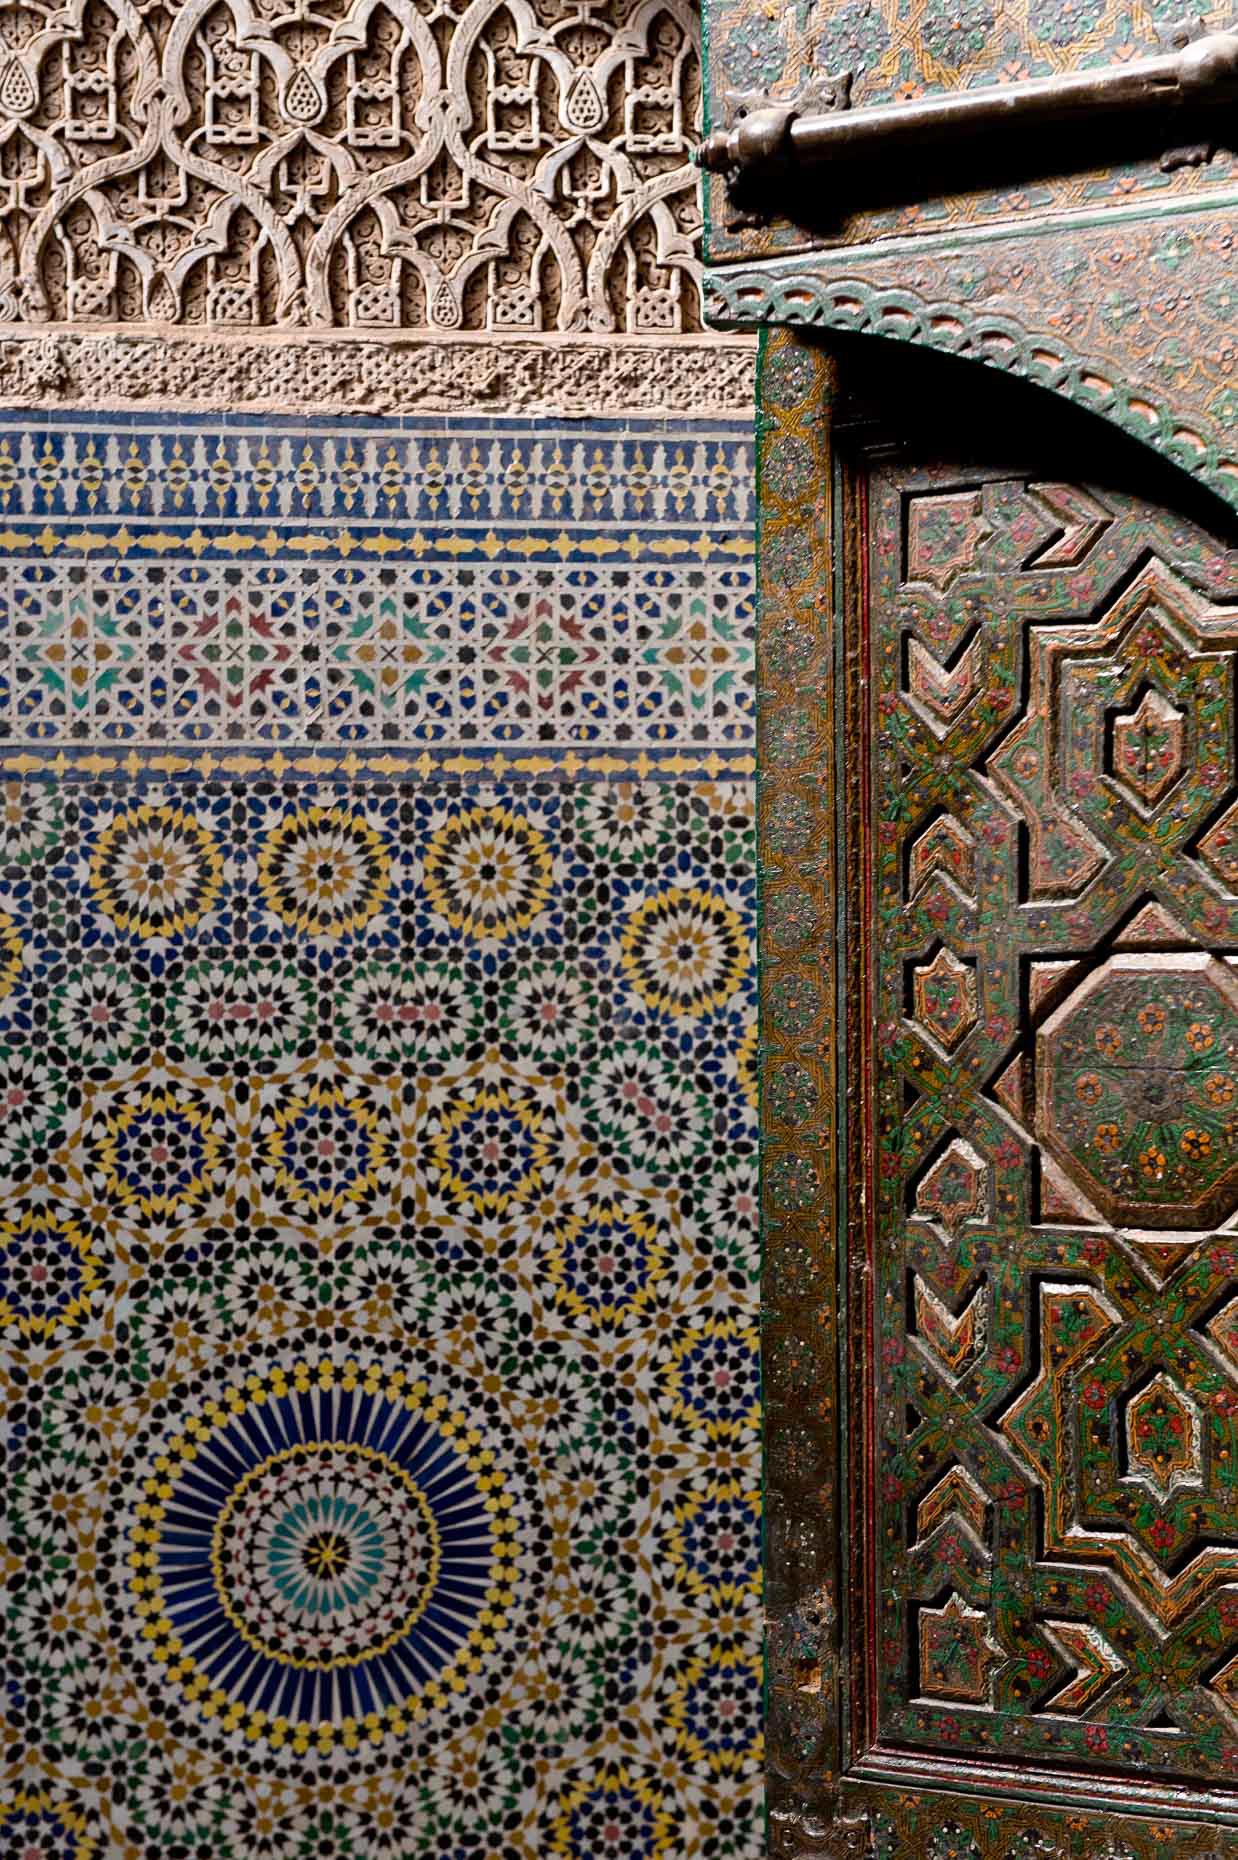 teluoet-kasbah-detail-arabic-design-exterior-door-tiles-morocco-africa